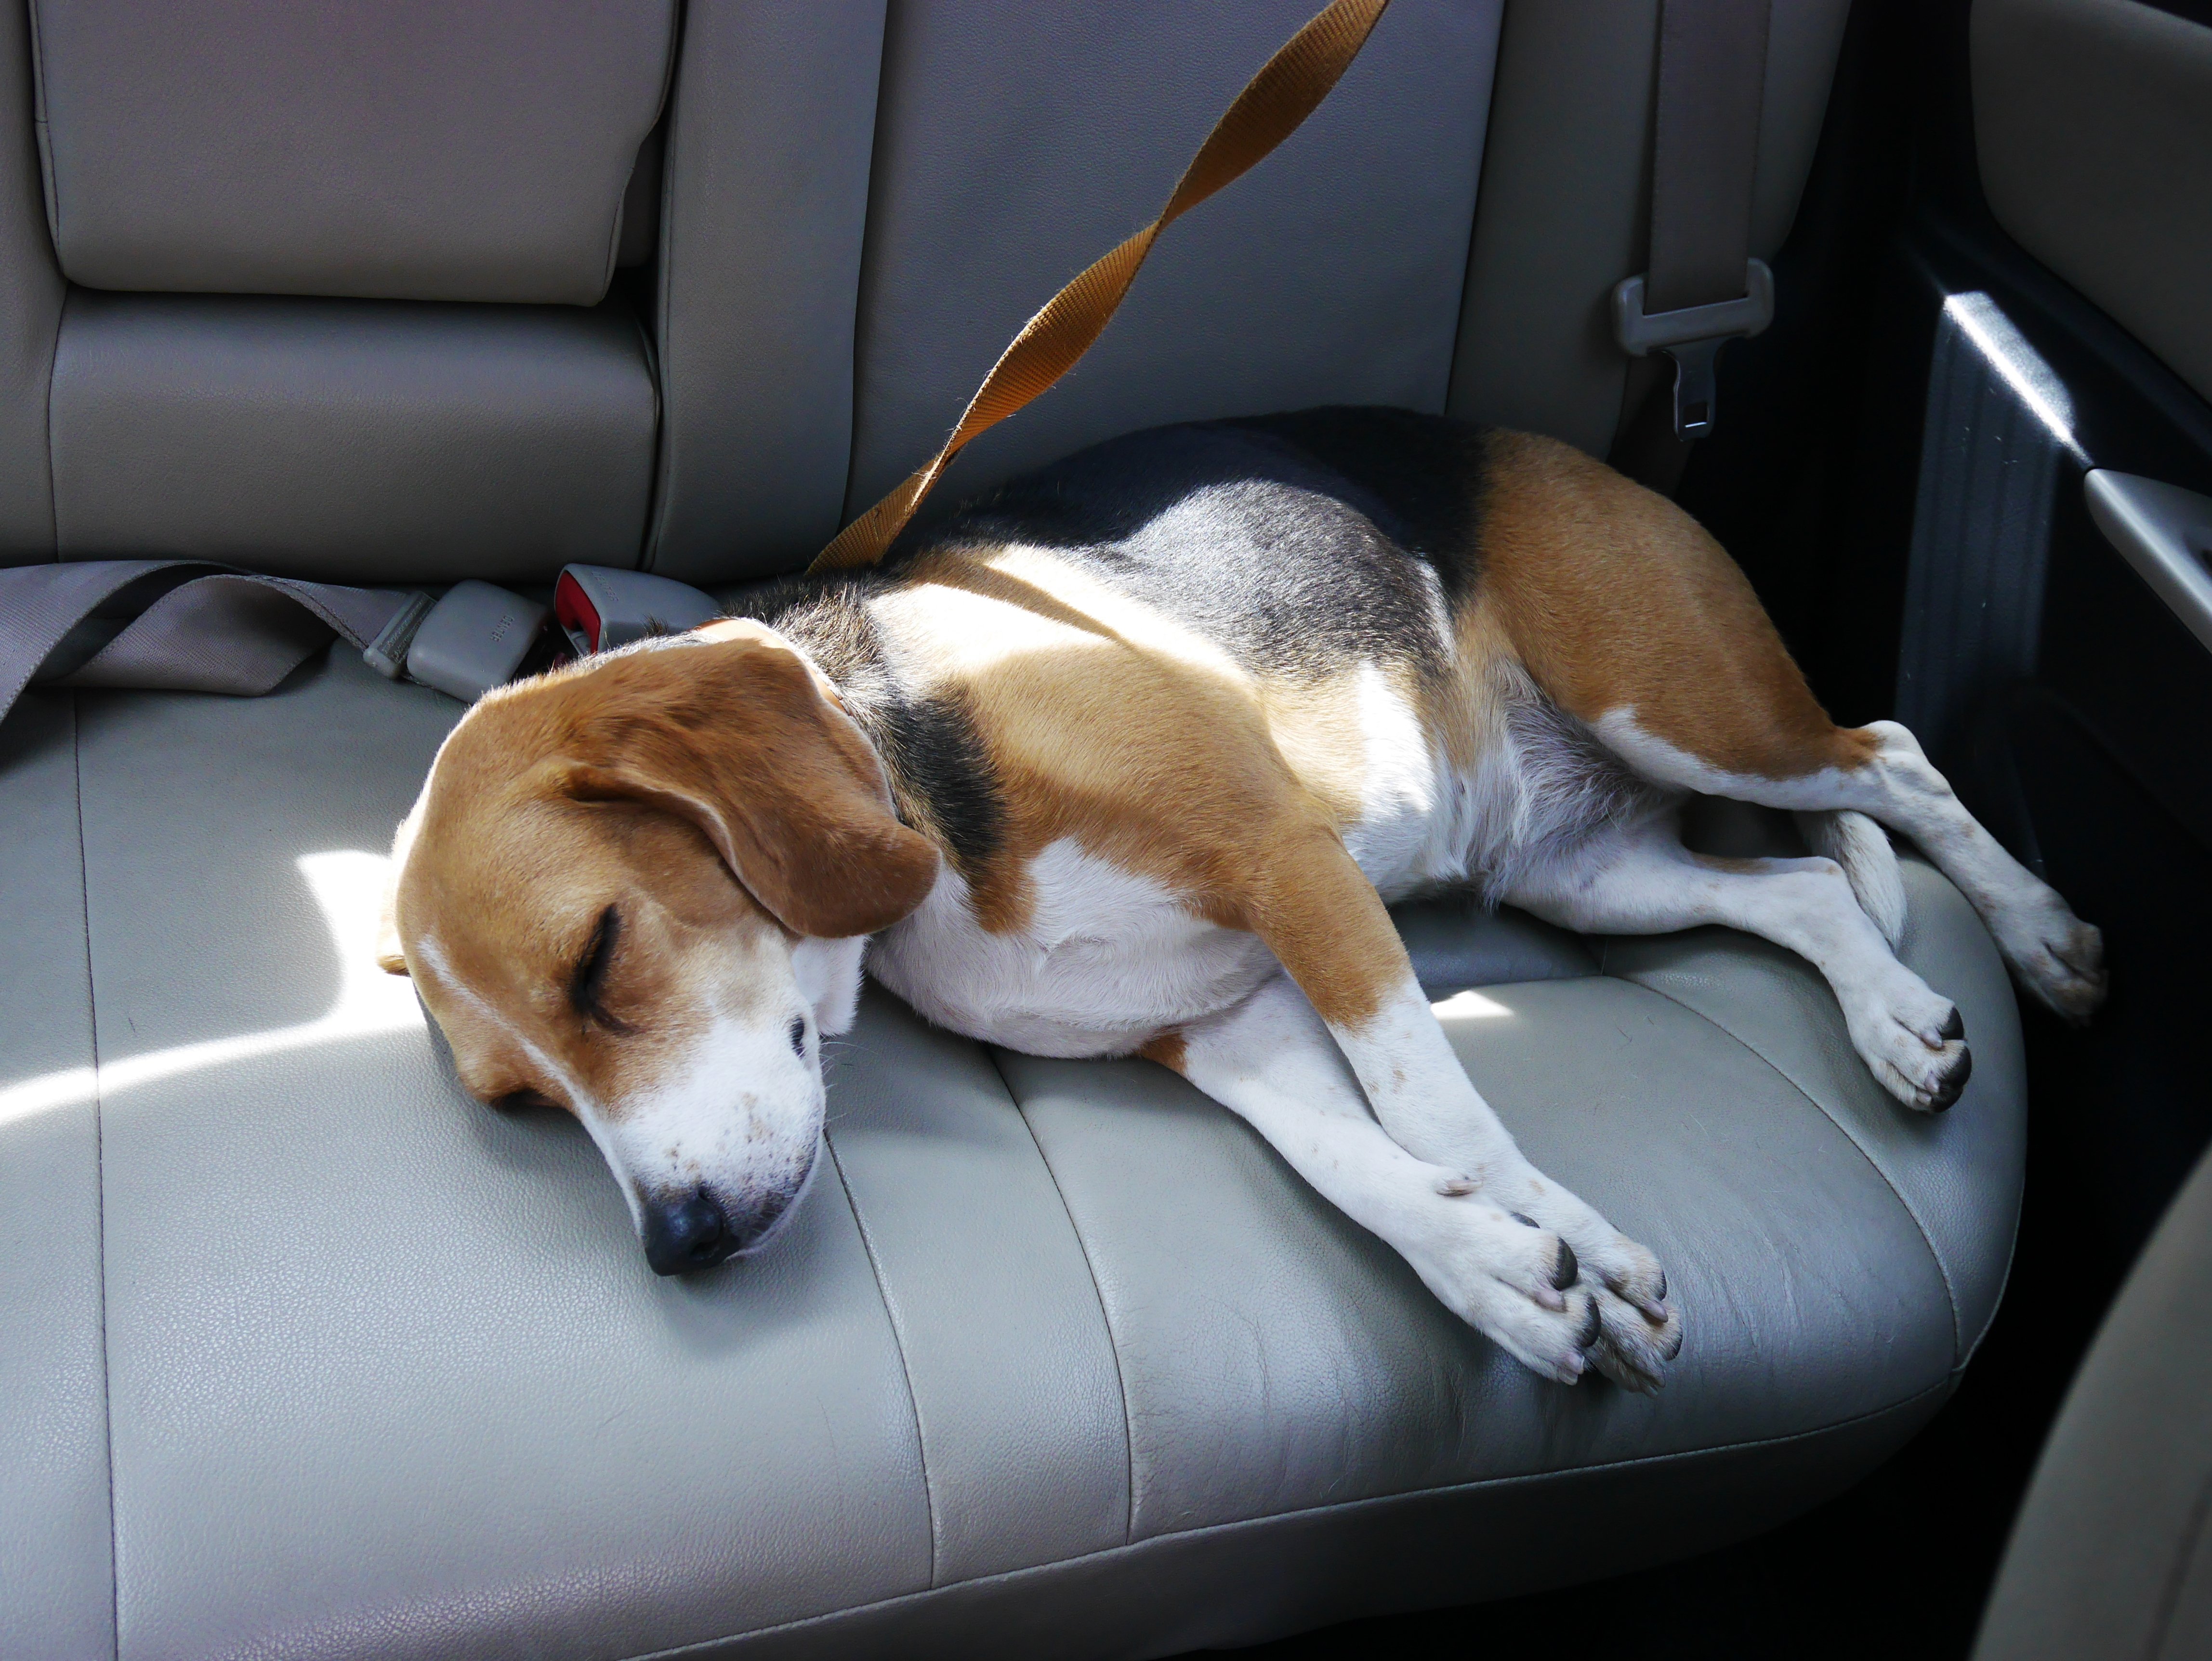 Exemplarisches Bild eines Hundes im Auto | Quelle: Shutterstock